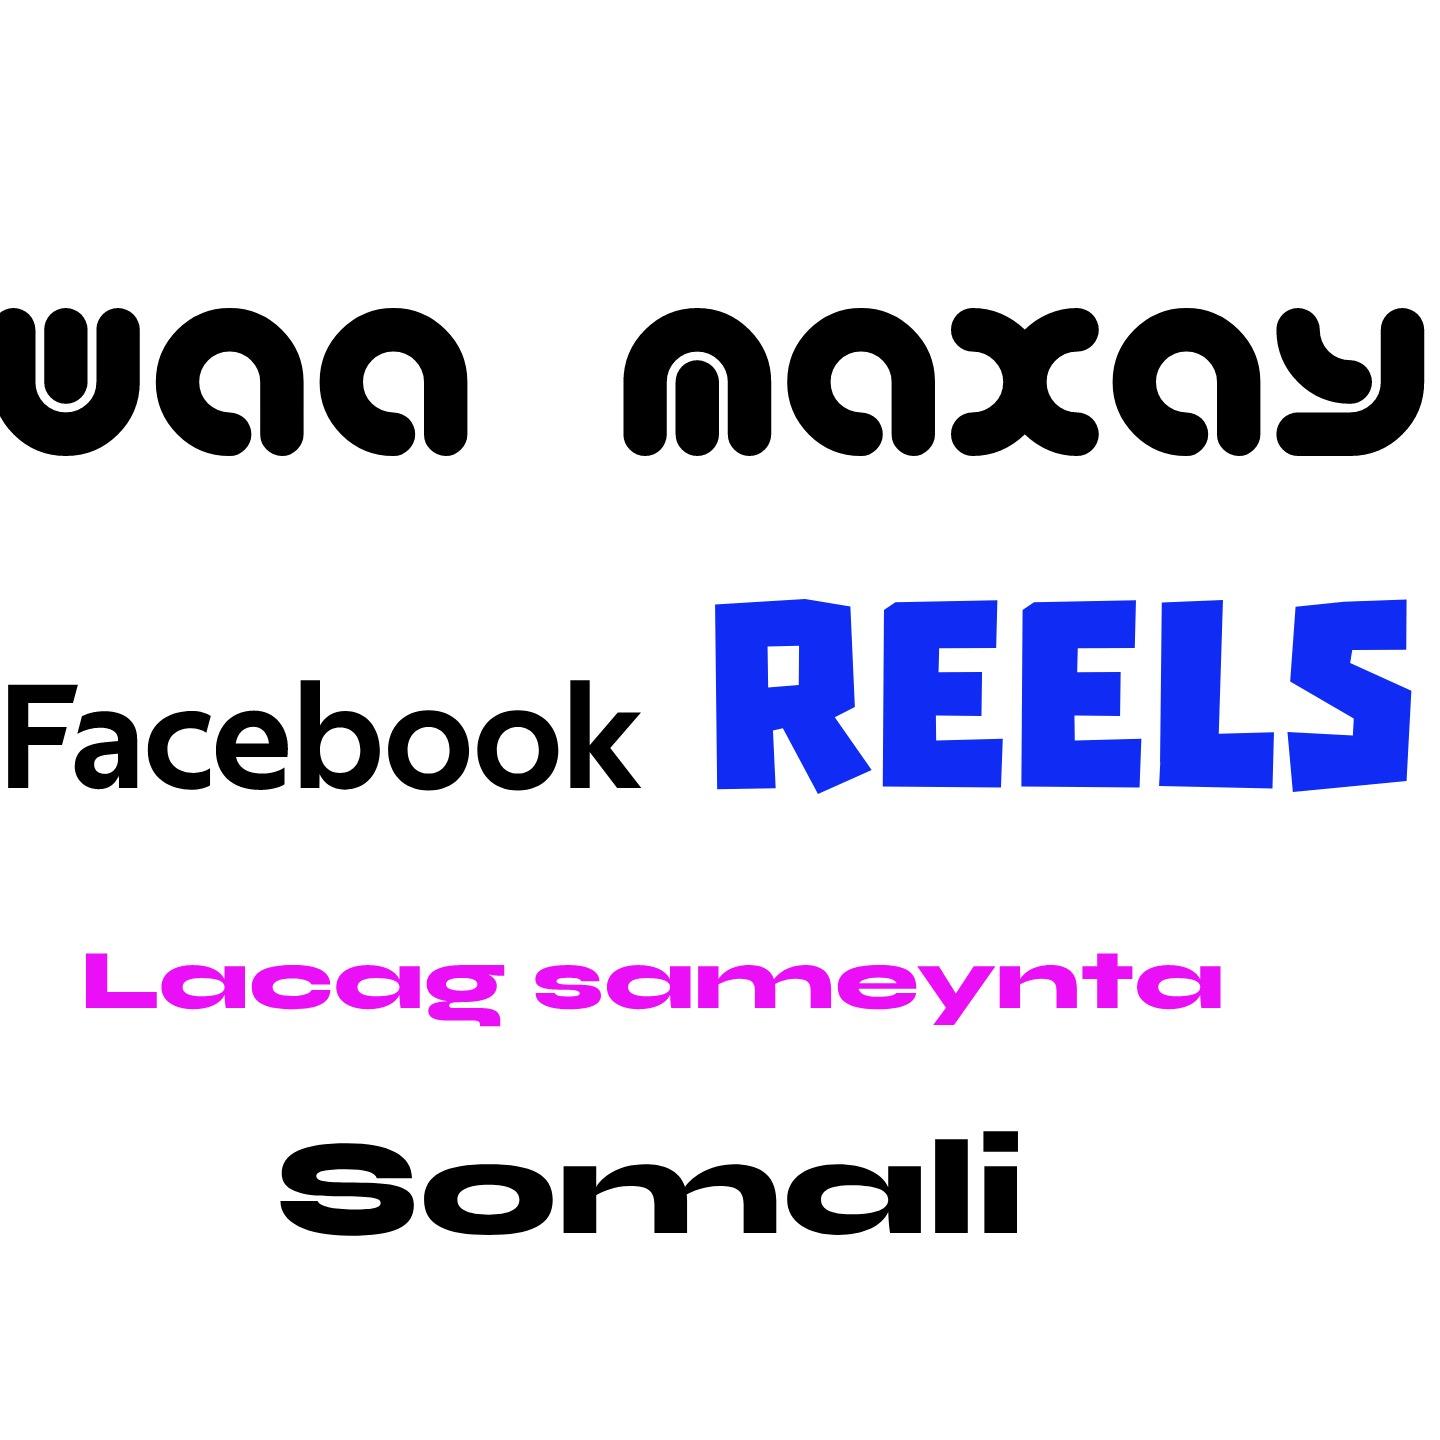 Waa Maxay Facebook Reels